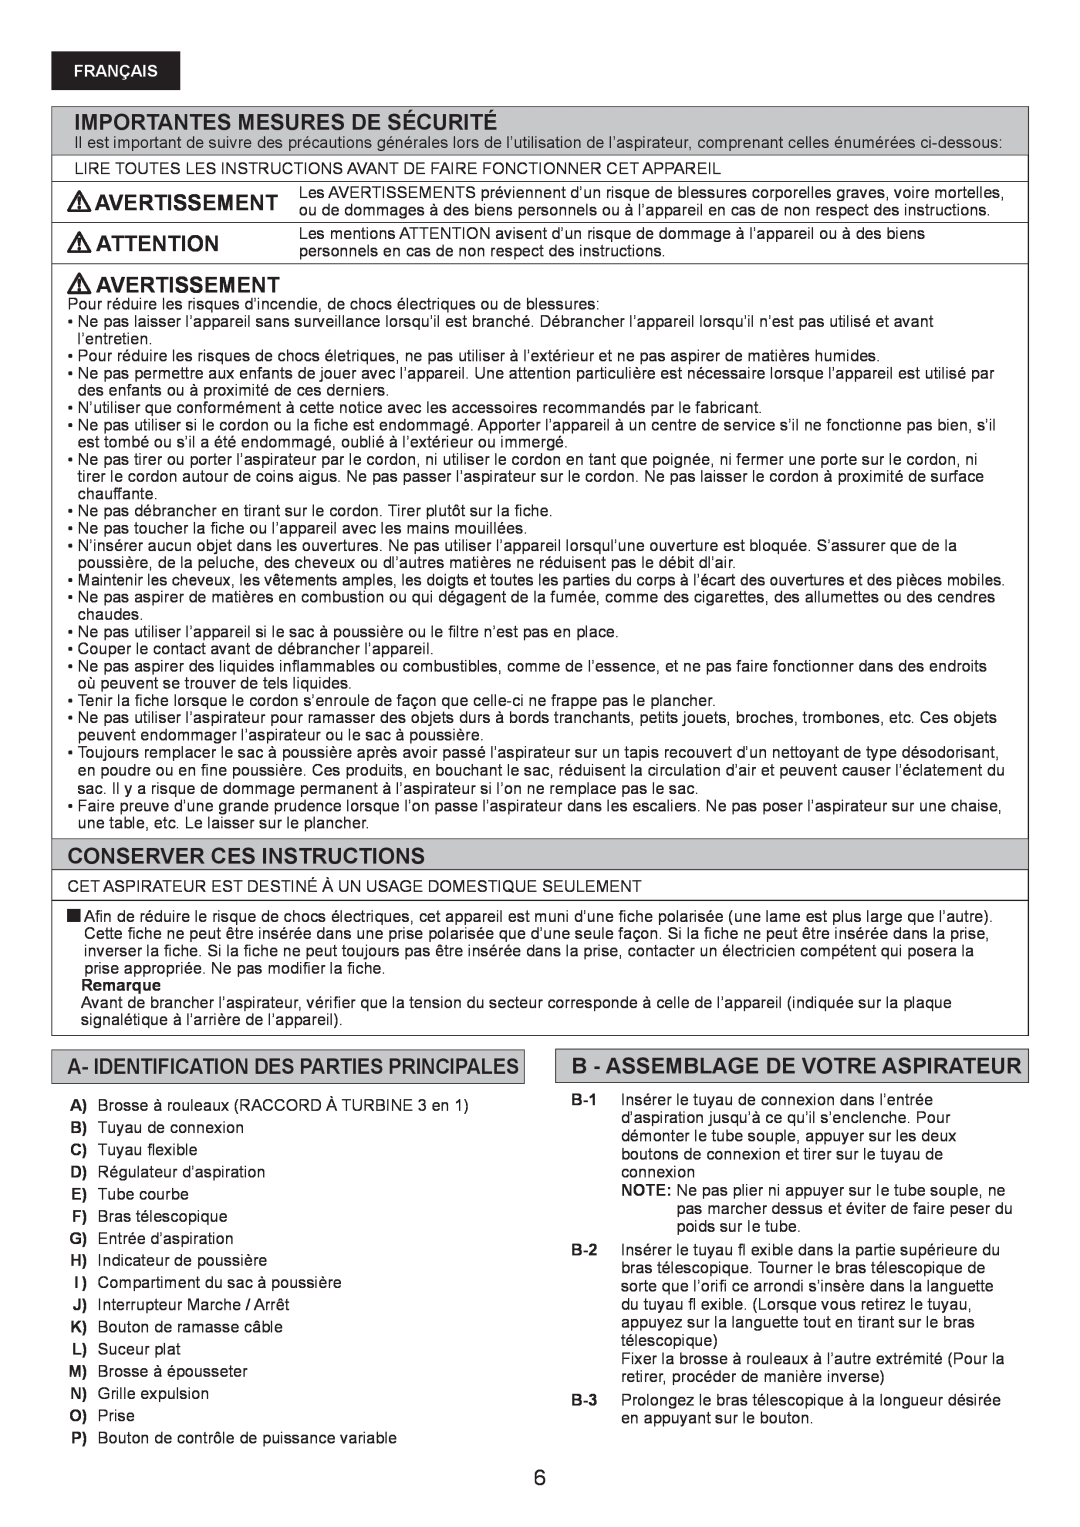 Panasonic MC-CG467 manual Importantes Mesures De Sécurité, Avertissement, Conserver Ces Instructions, Français 